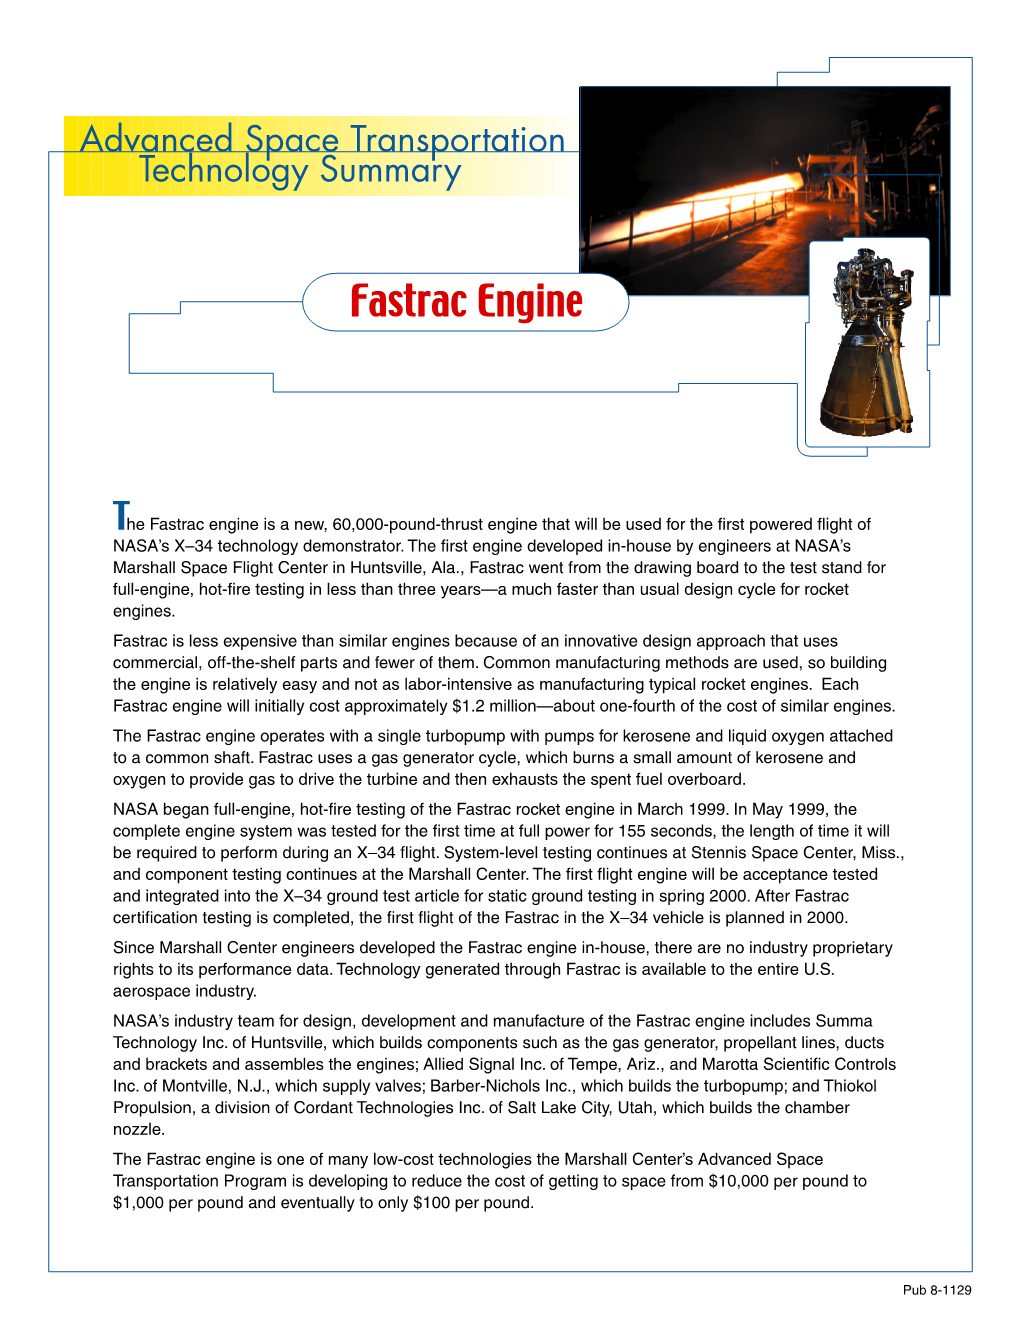 Fastrac Engine